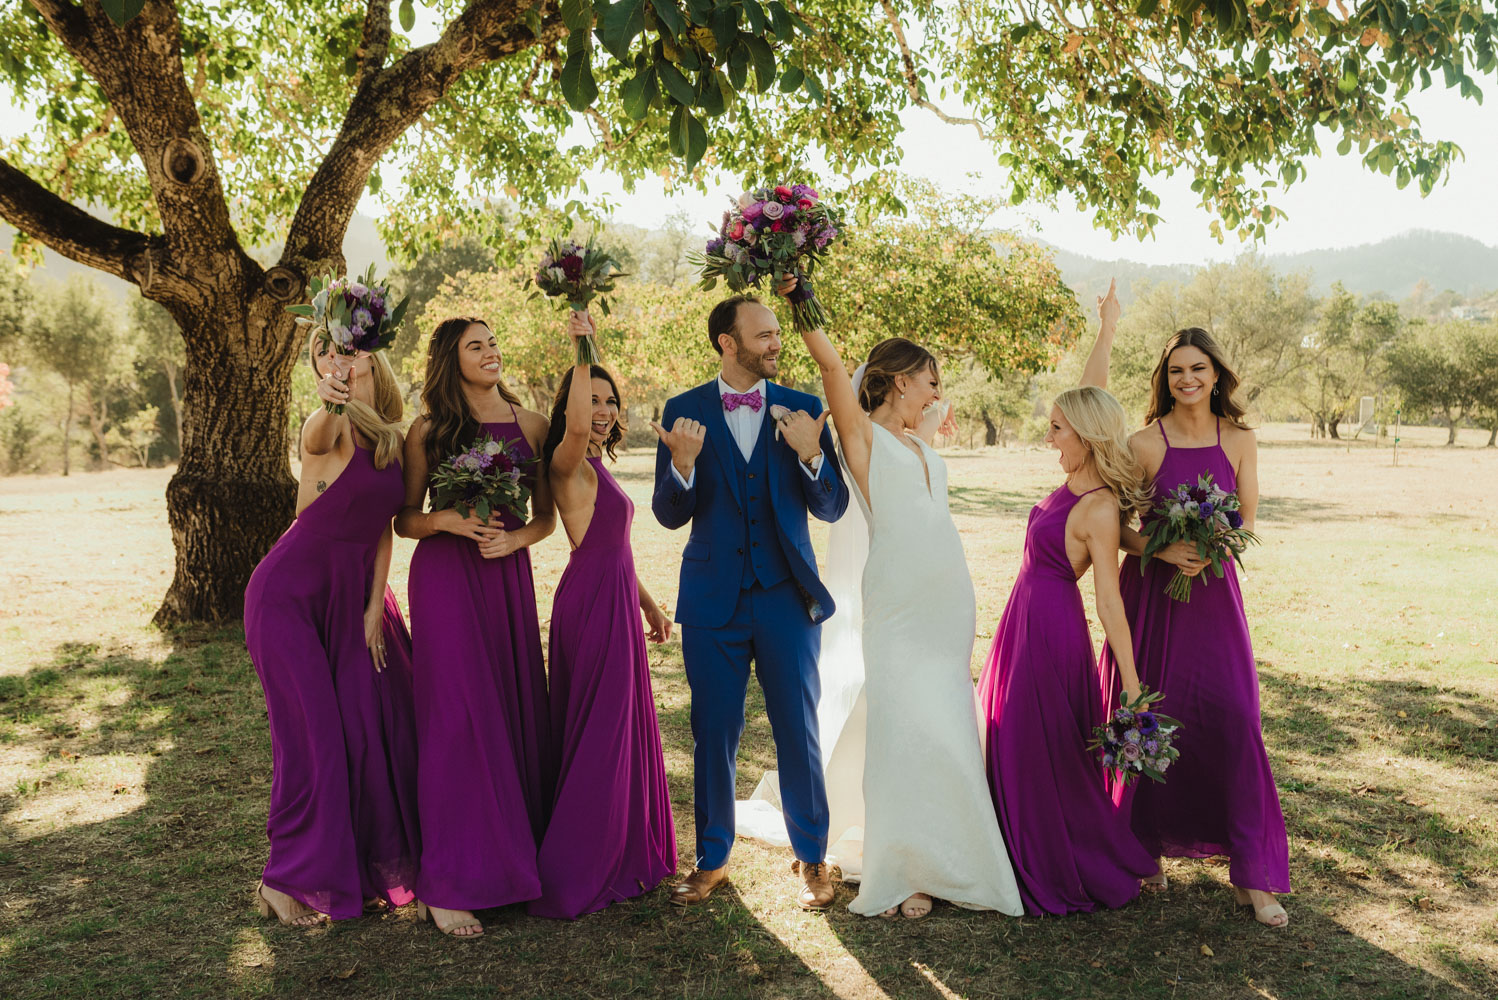 Triple S Ranch Wedding Venue, groom with bridesmaids photo